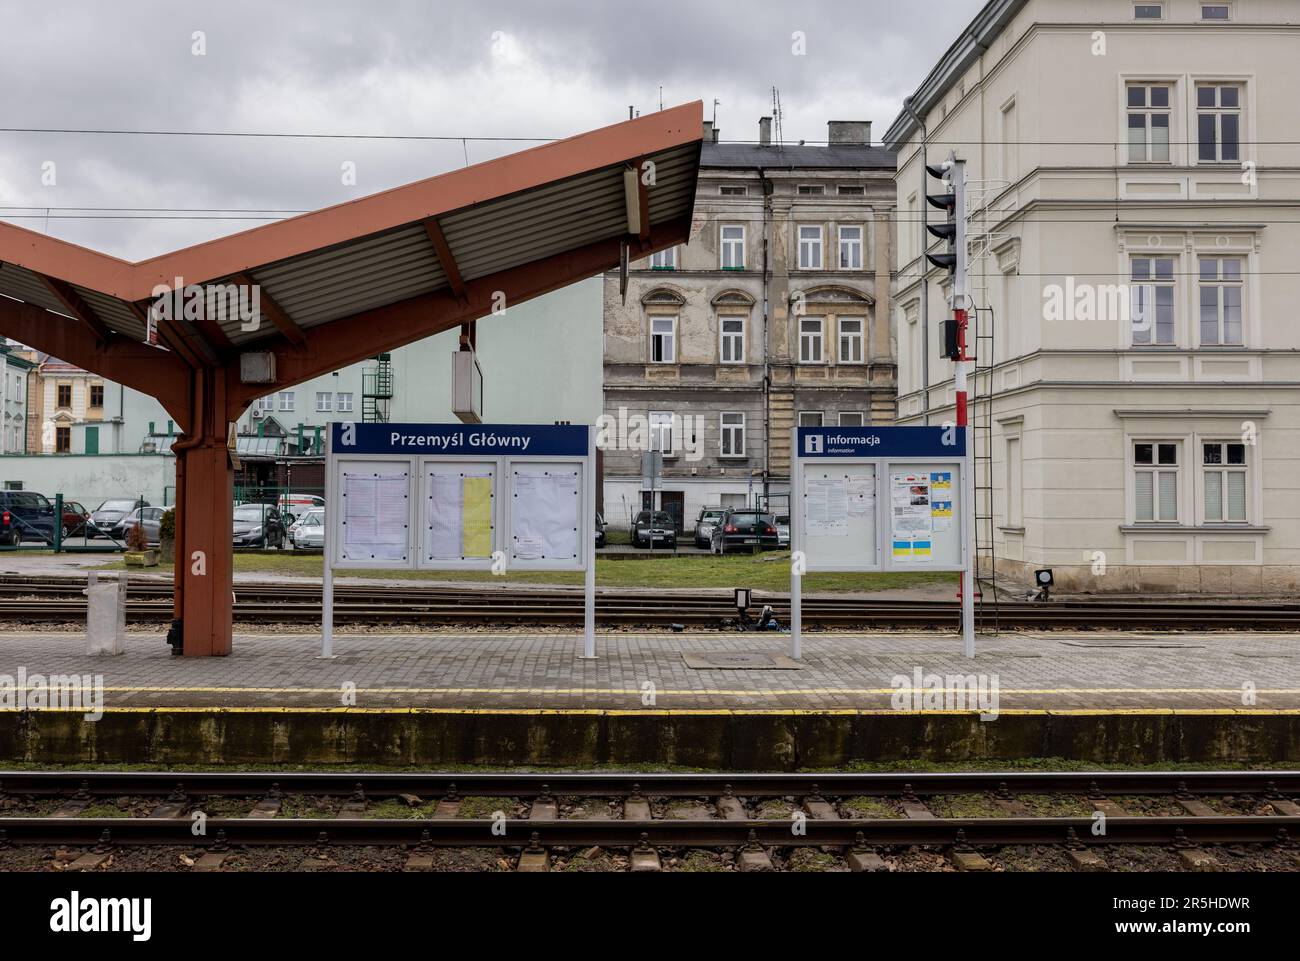 PRZEMYSL, POLAND – February 25, 2023: A platform is seen at the Przemyśl Główny railway station. Stock Photo